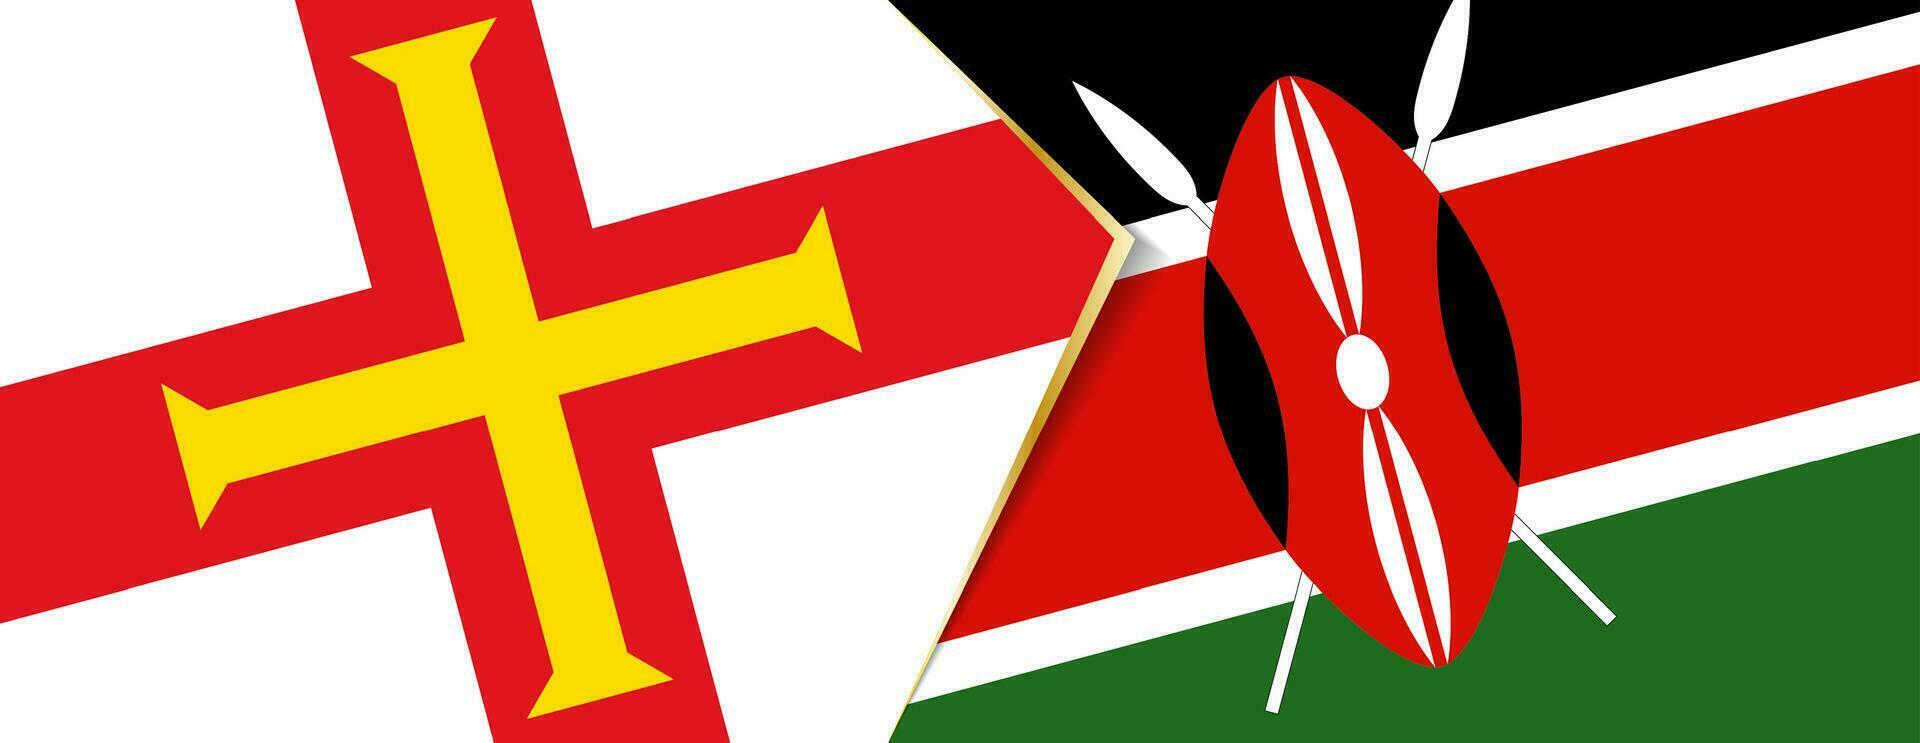 guernsey och kenya flaggor, två vektor flaggor.